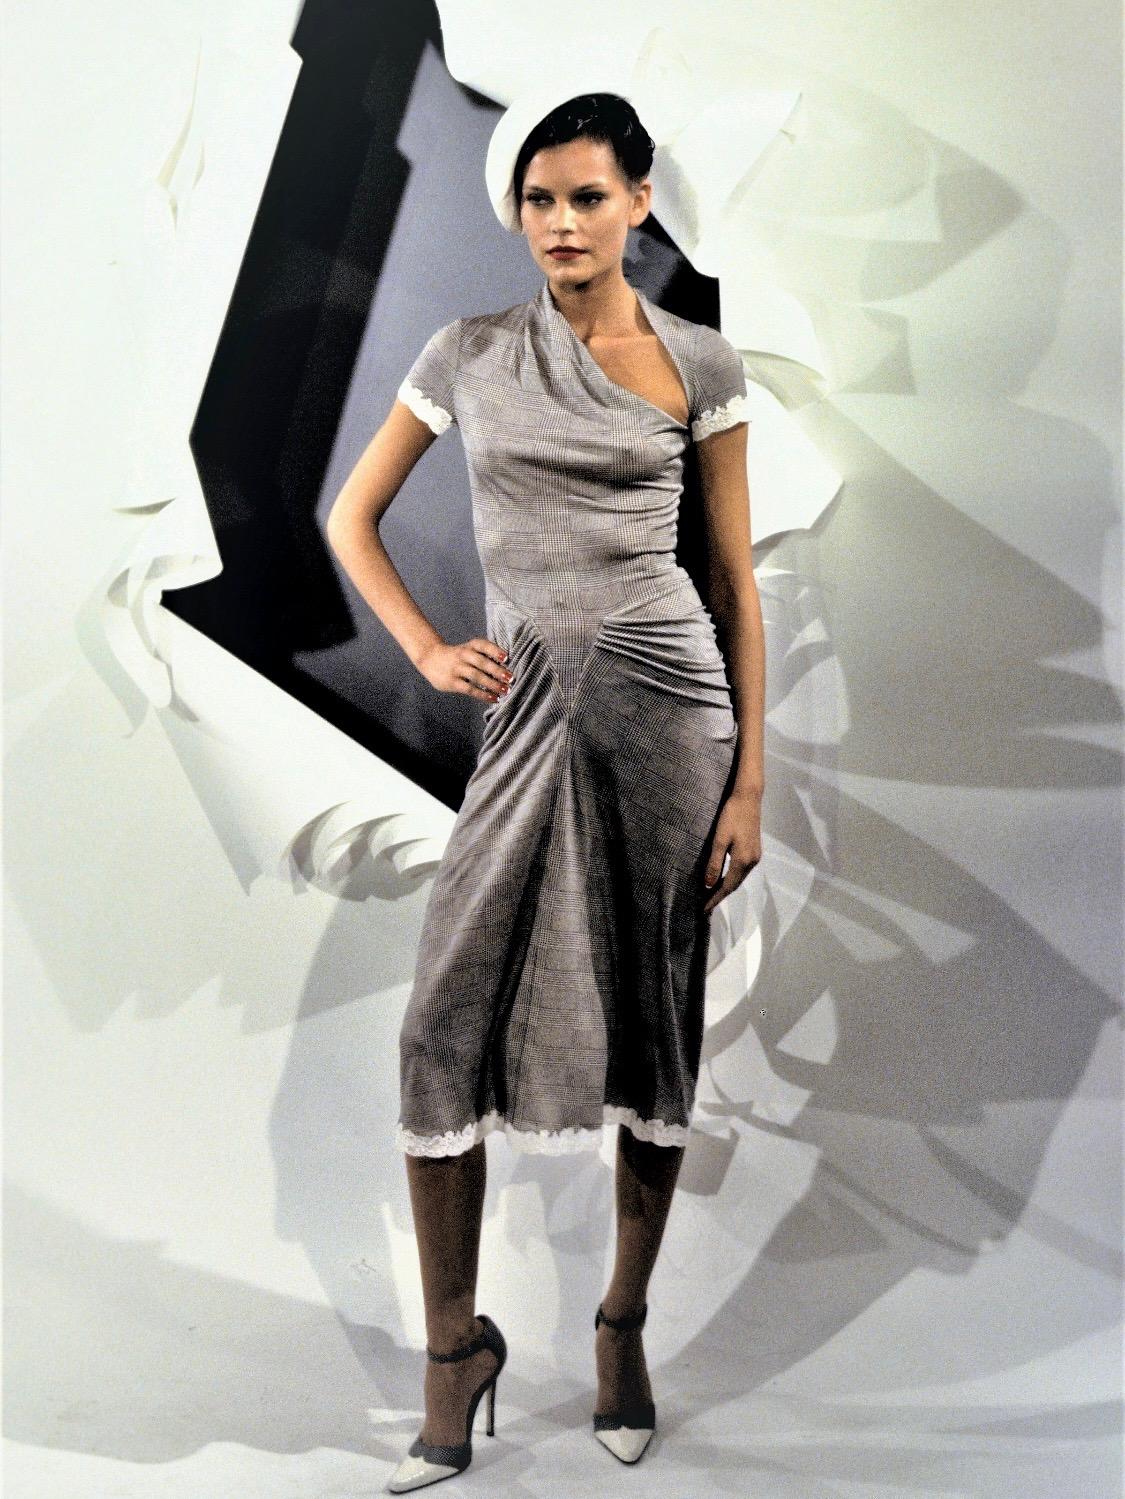 Présentation d'un tailleur jupe bordé de dentelle, conçu par John Galliano pour la collection printemps/été 1999 de Christian Dior. La combinaison du gris et des motifs appliqués en dentelle a fait ses débuts sur le défilé de la Haute Couture